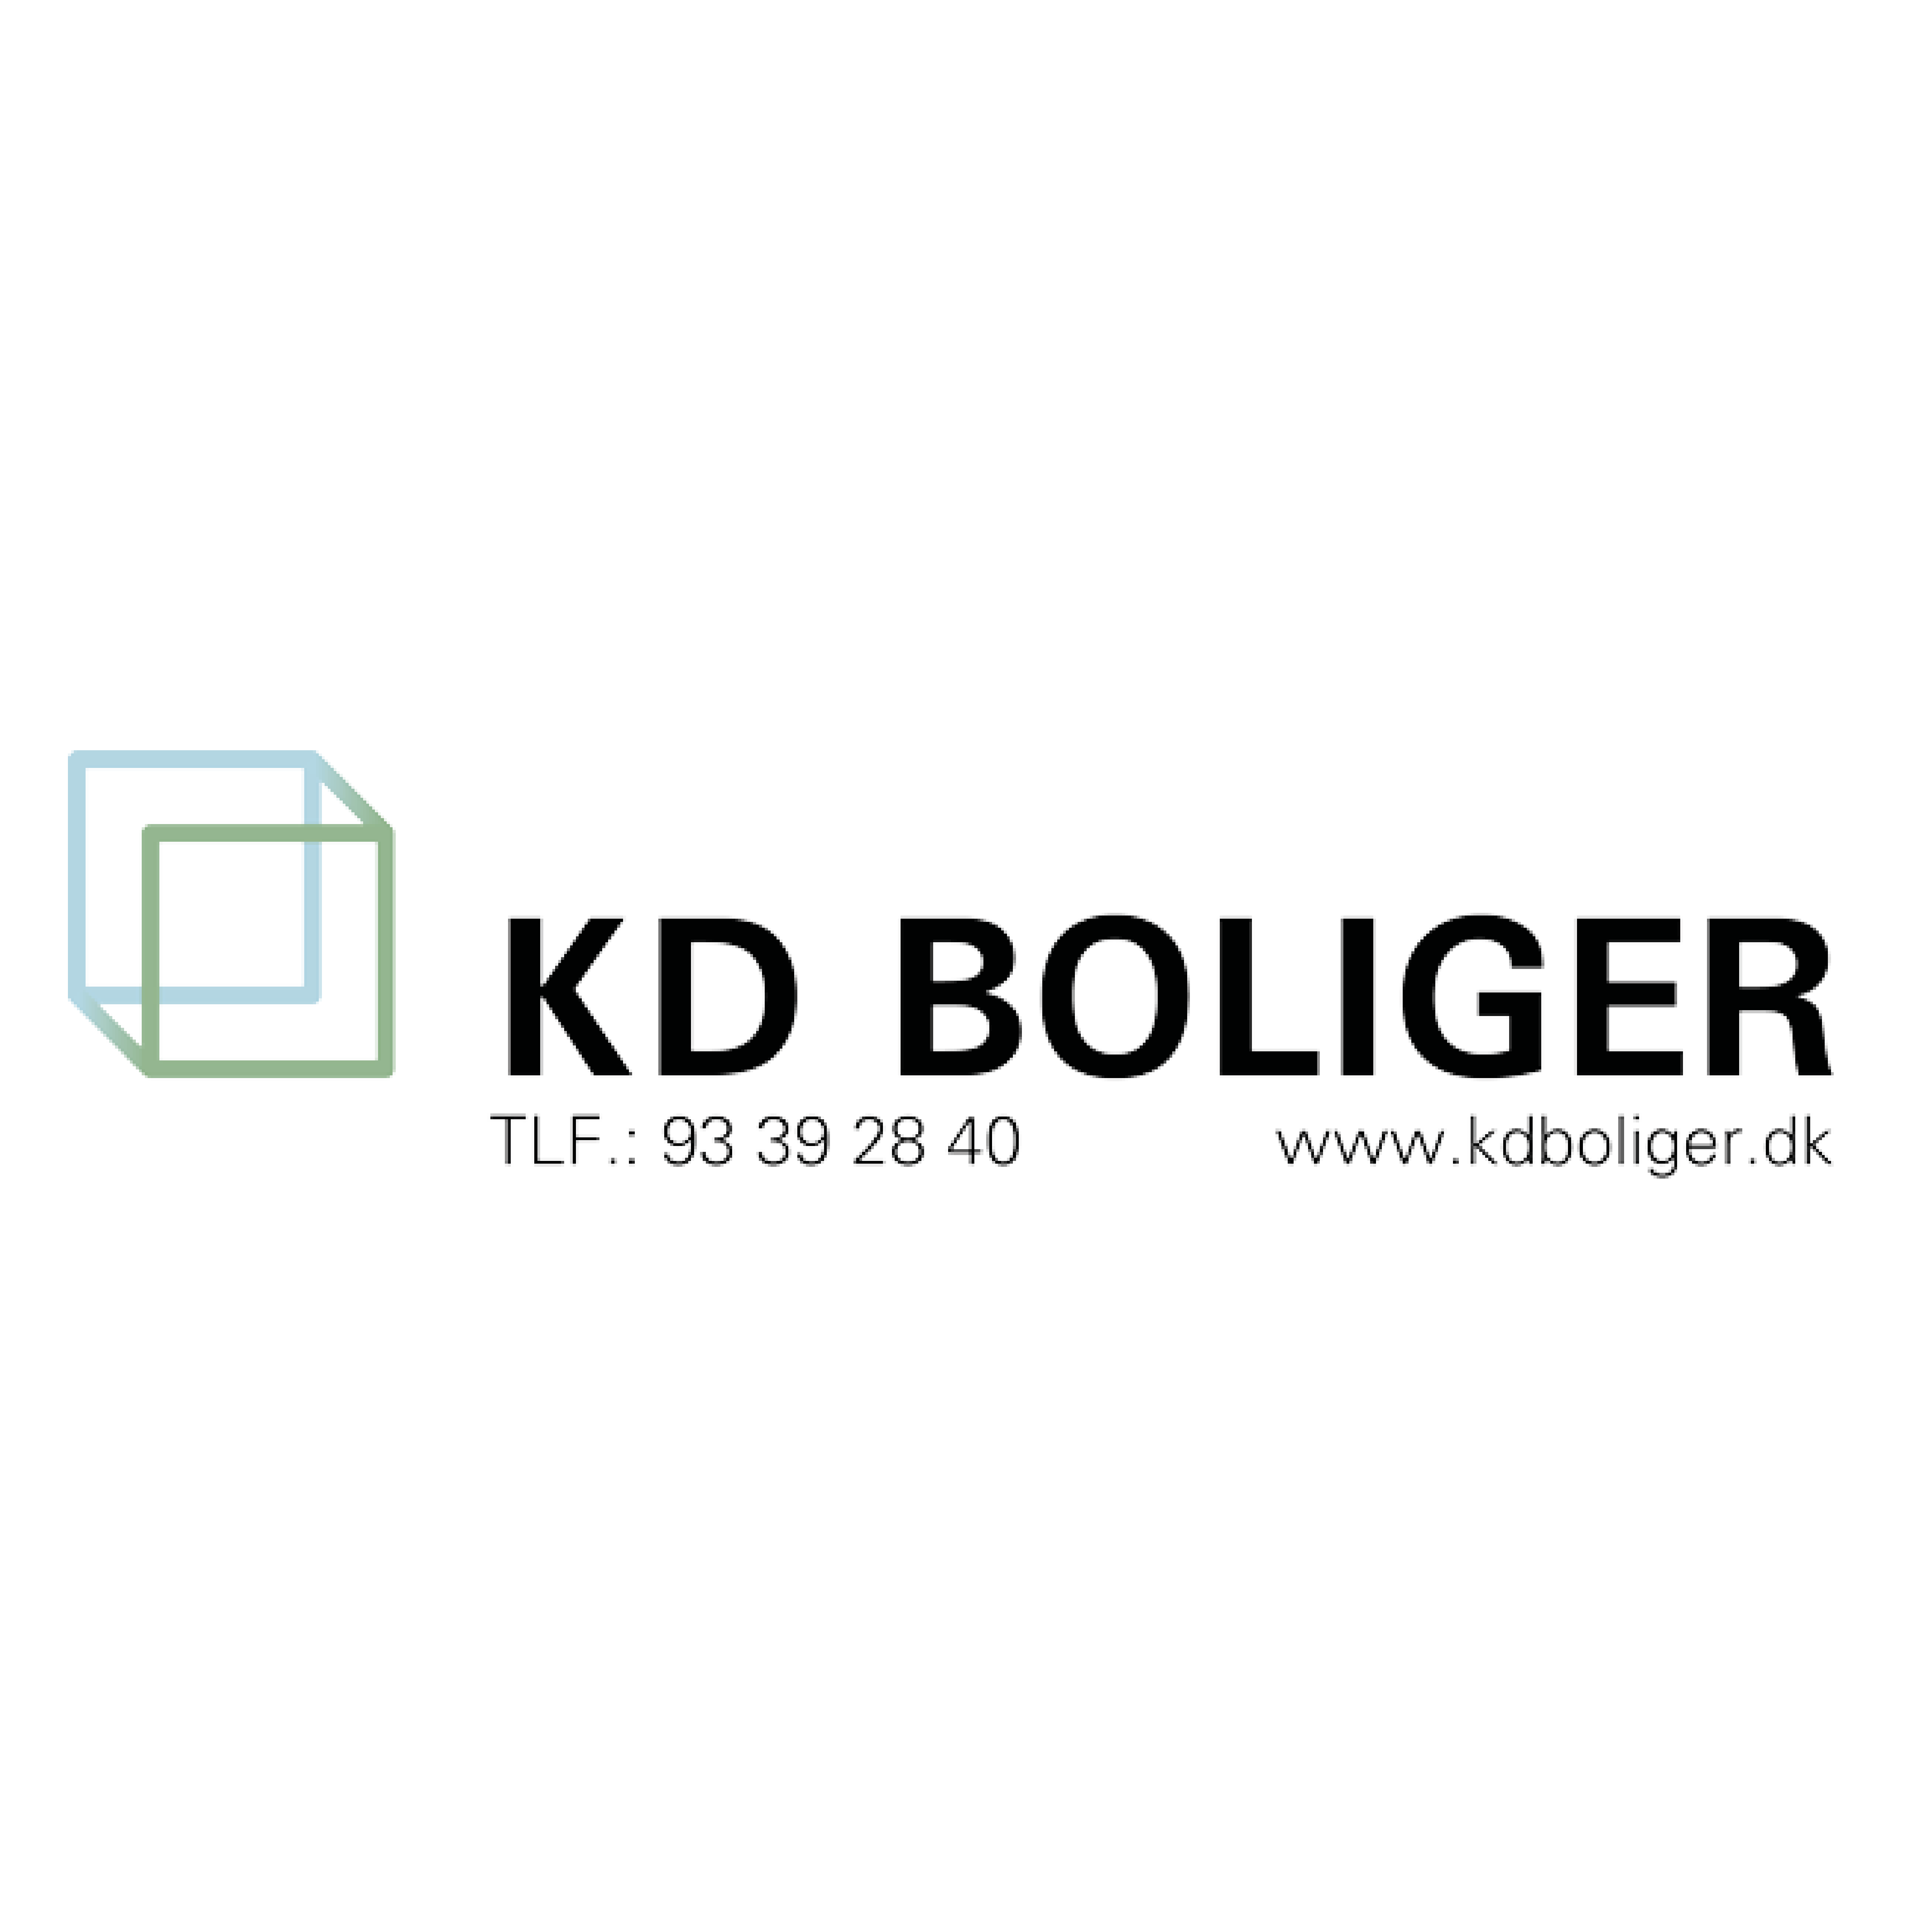 KD boliger logo